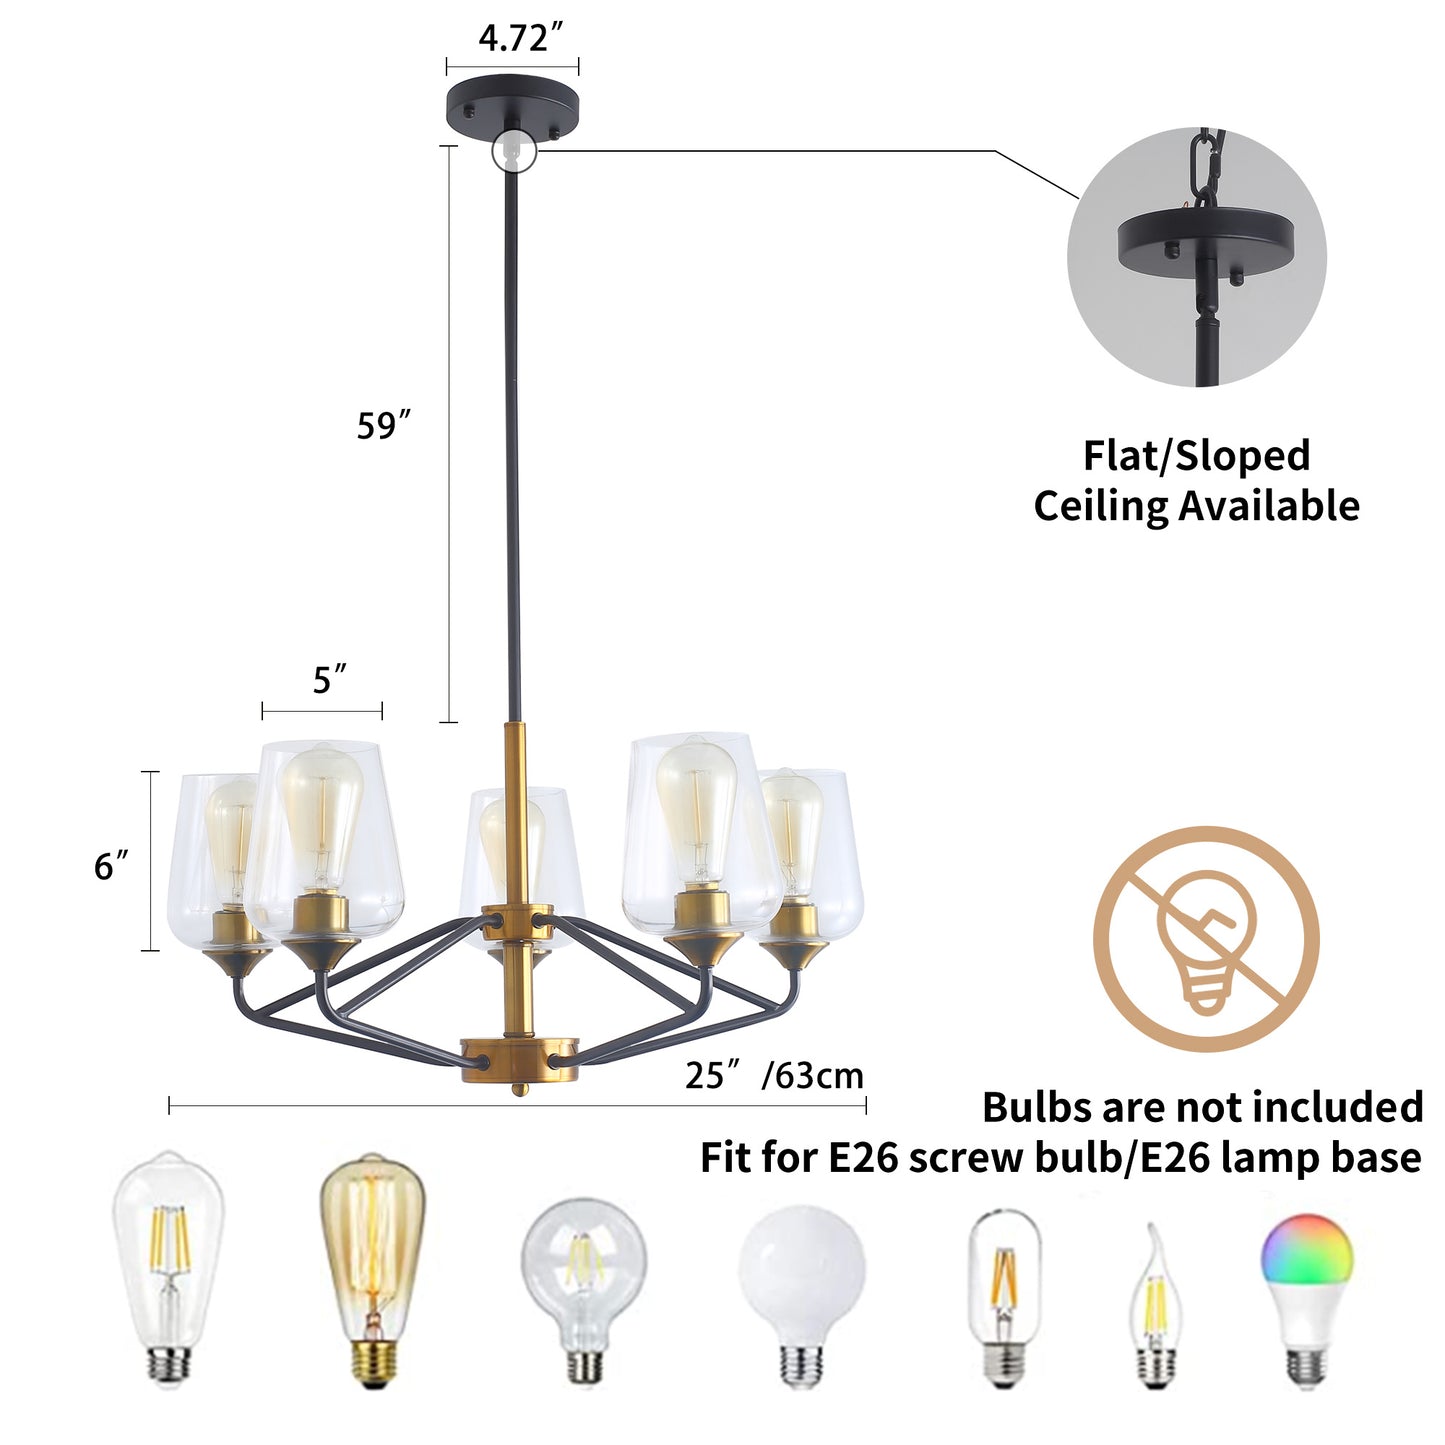 Modern American hanging chandelier -5 bulbs -E26 lamp holder